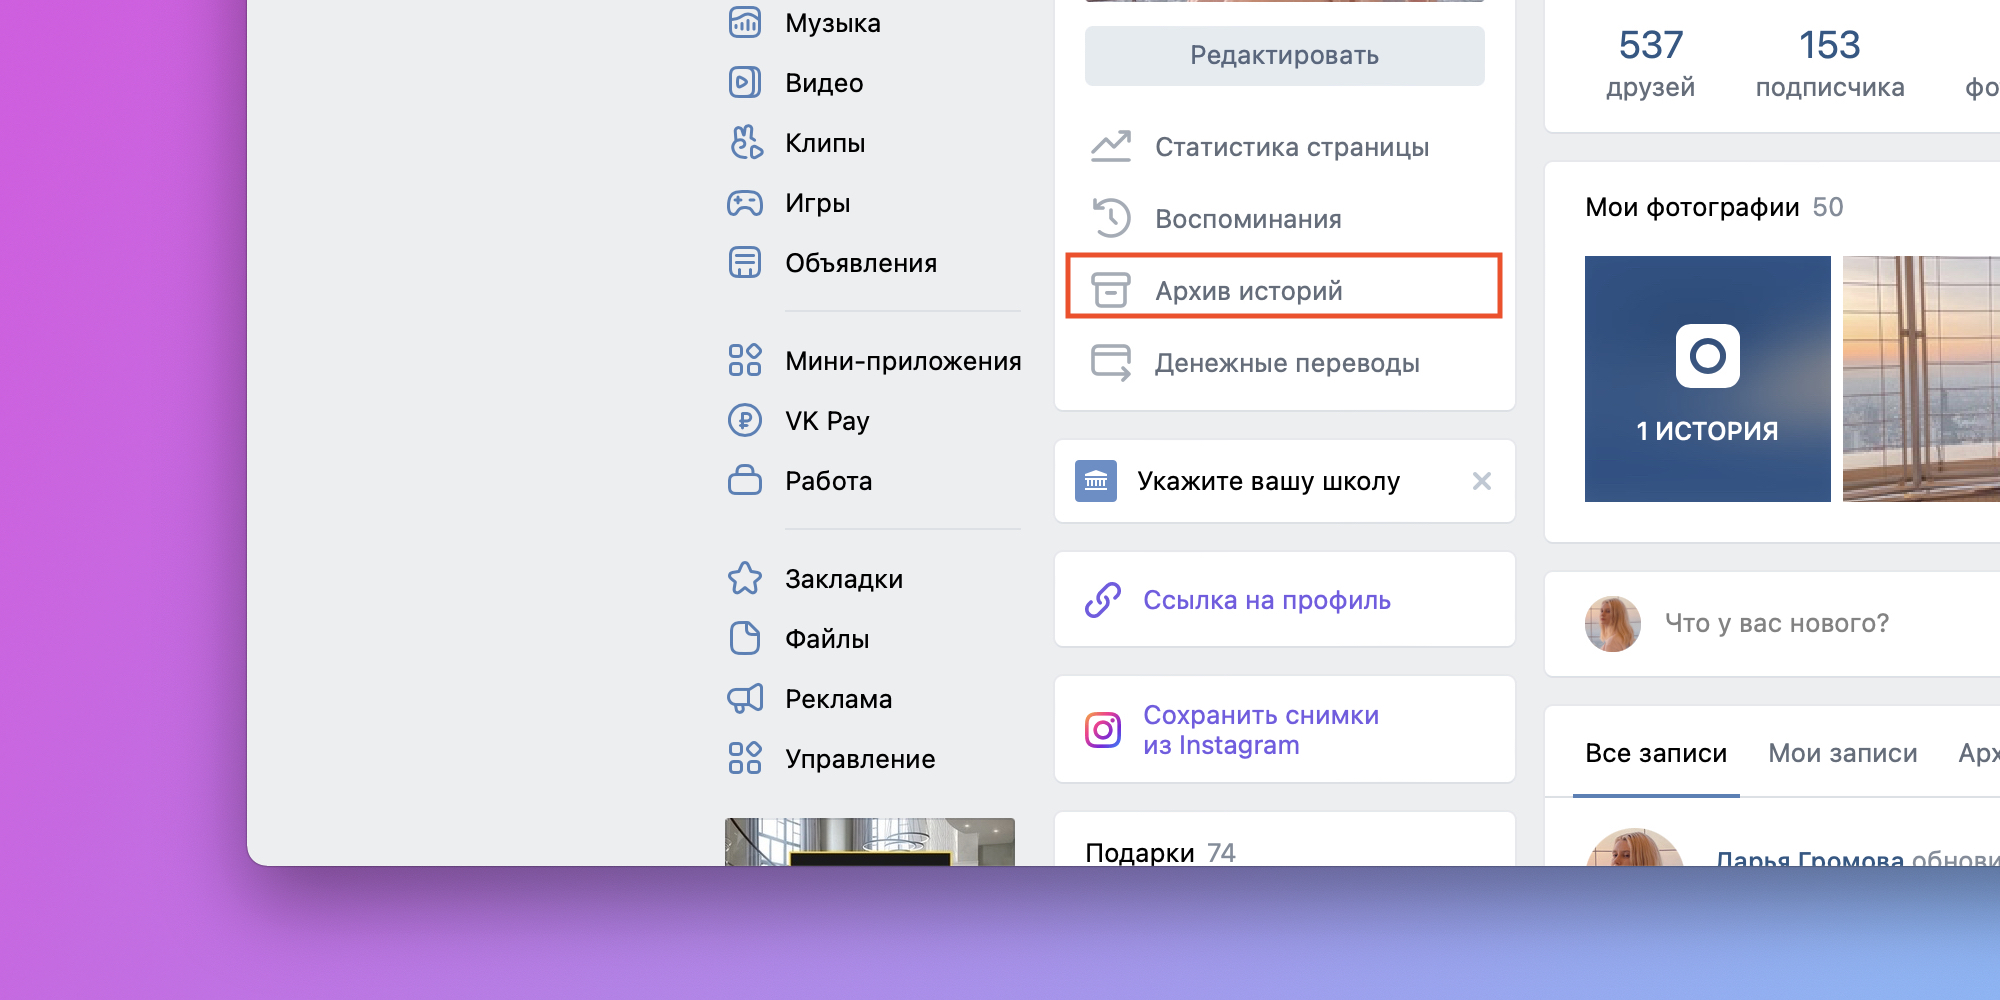 Как сделать историю и сюжет во «ВКонтакте»: инструкция со скриншотами и лайфхаками